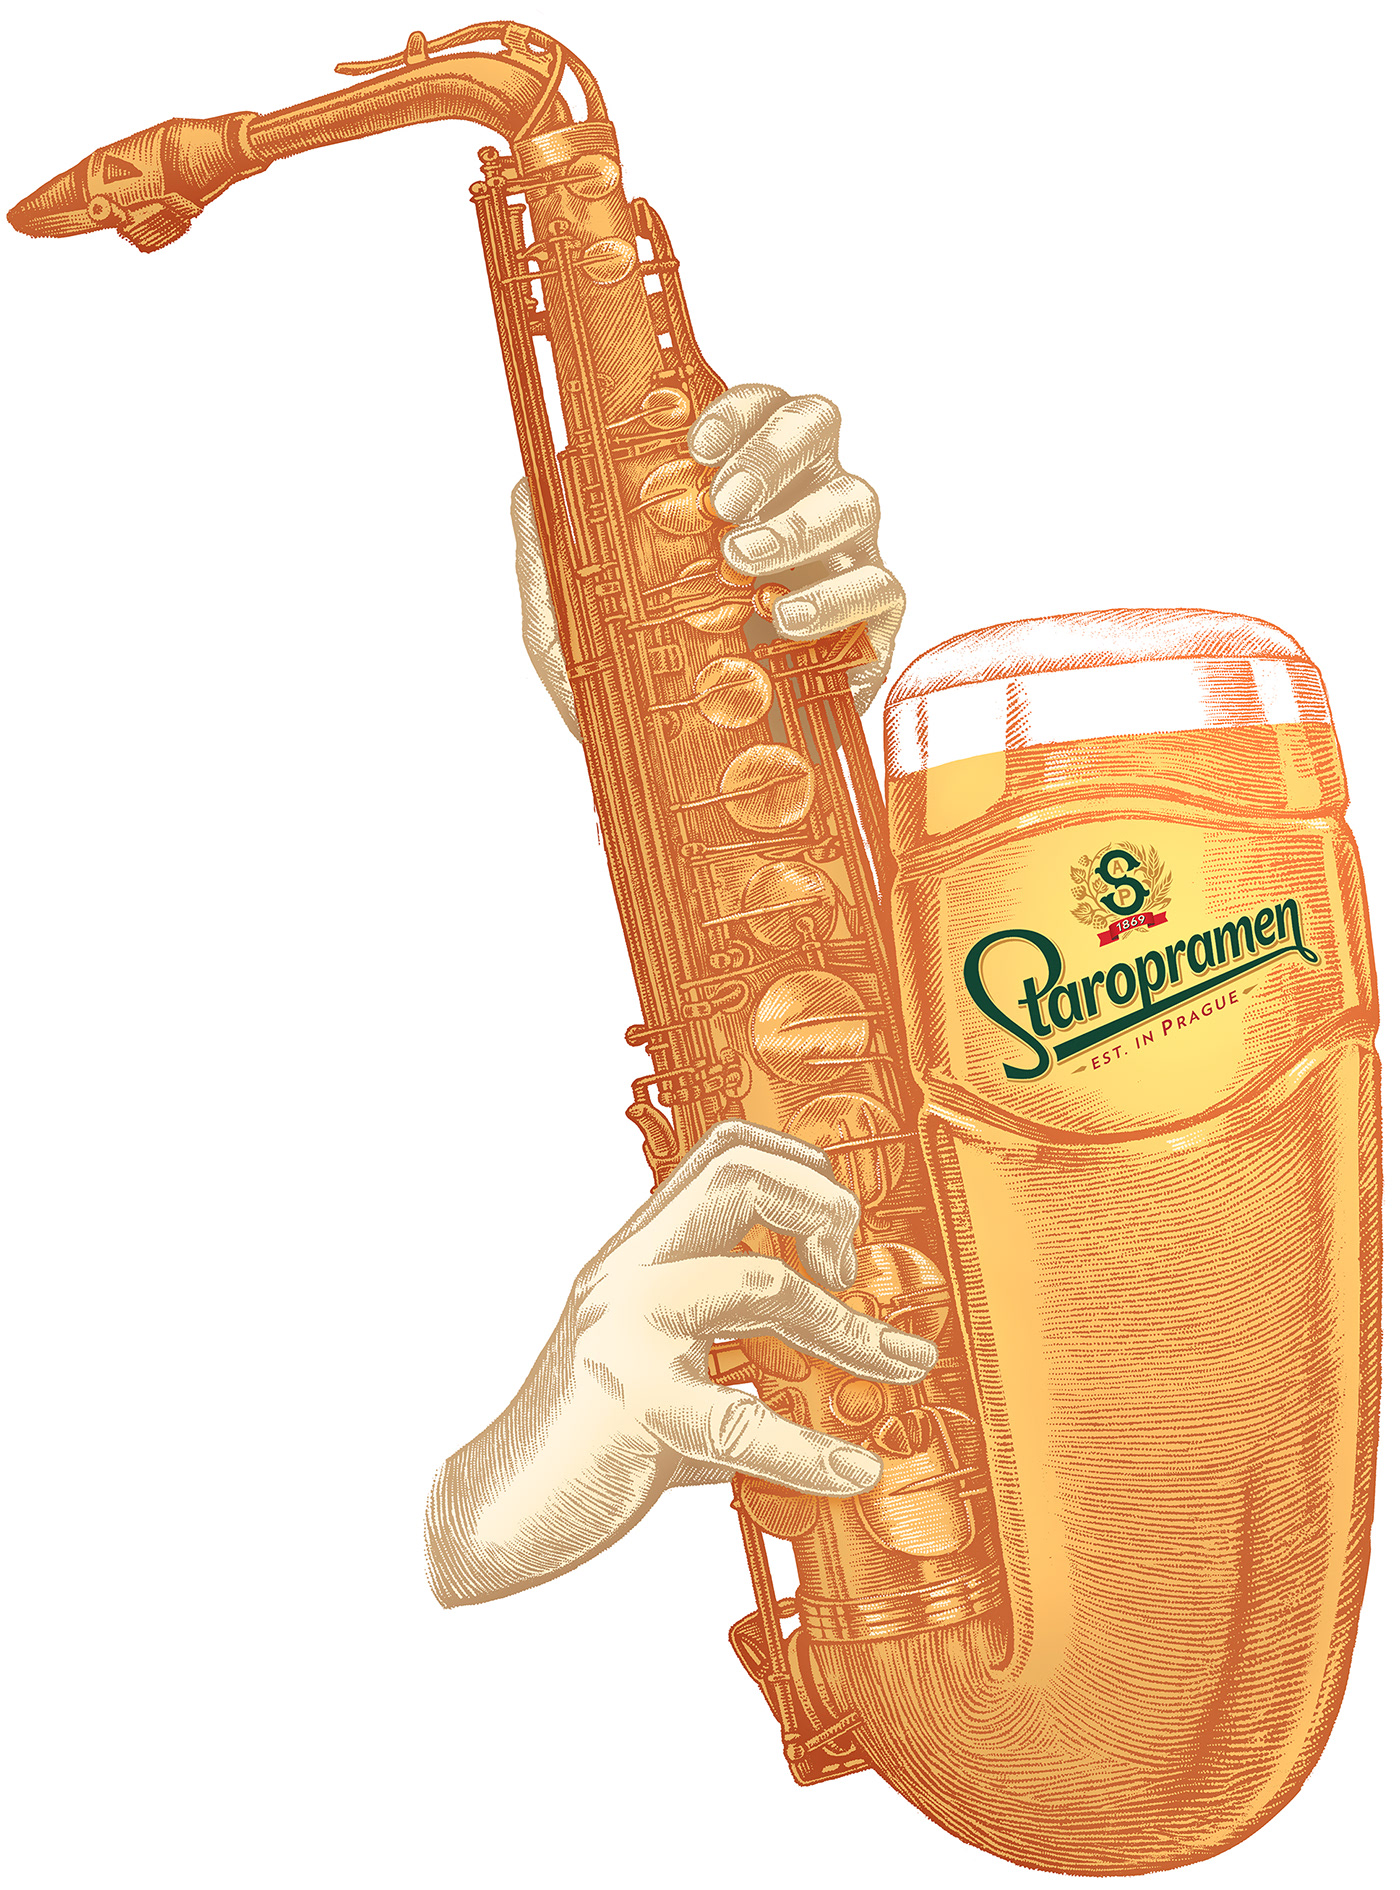 beer beer mug digital engraving ILLUSTRATION  jazz saxophone Staropramen Vector Illustration